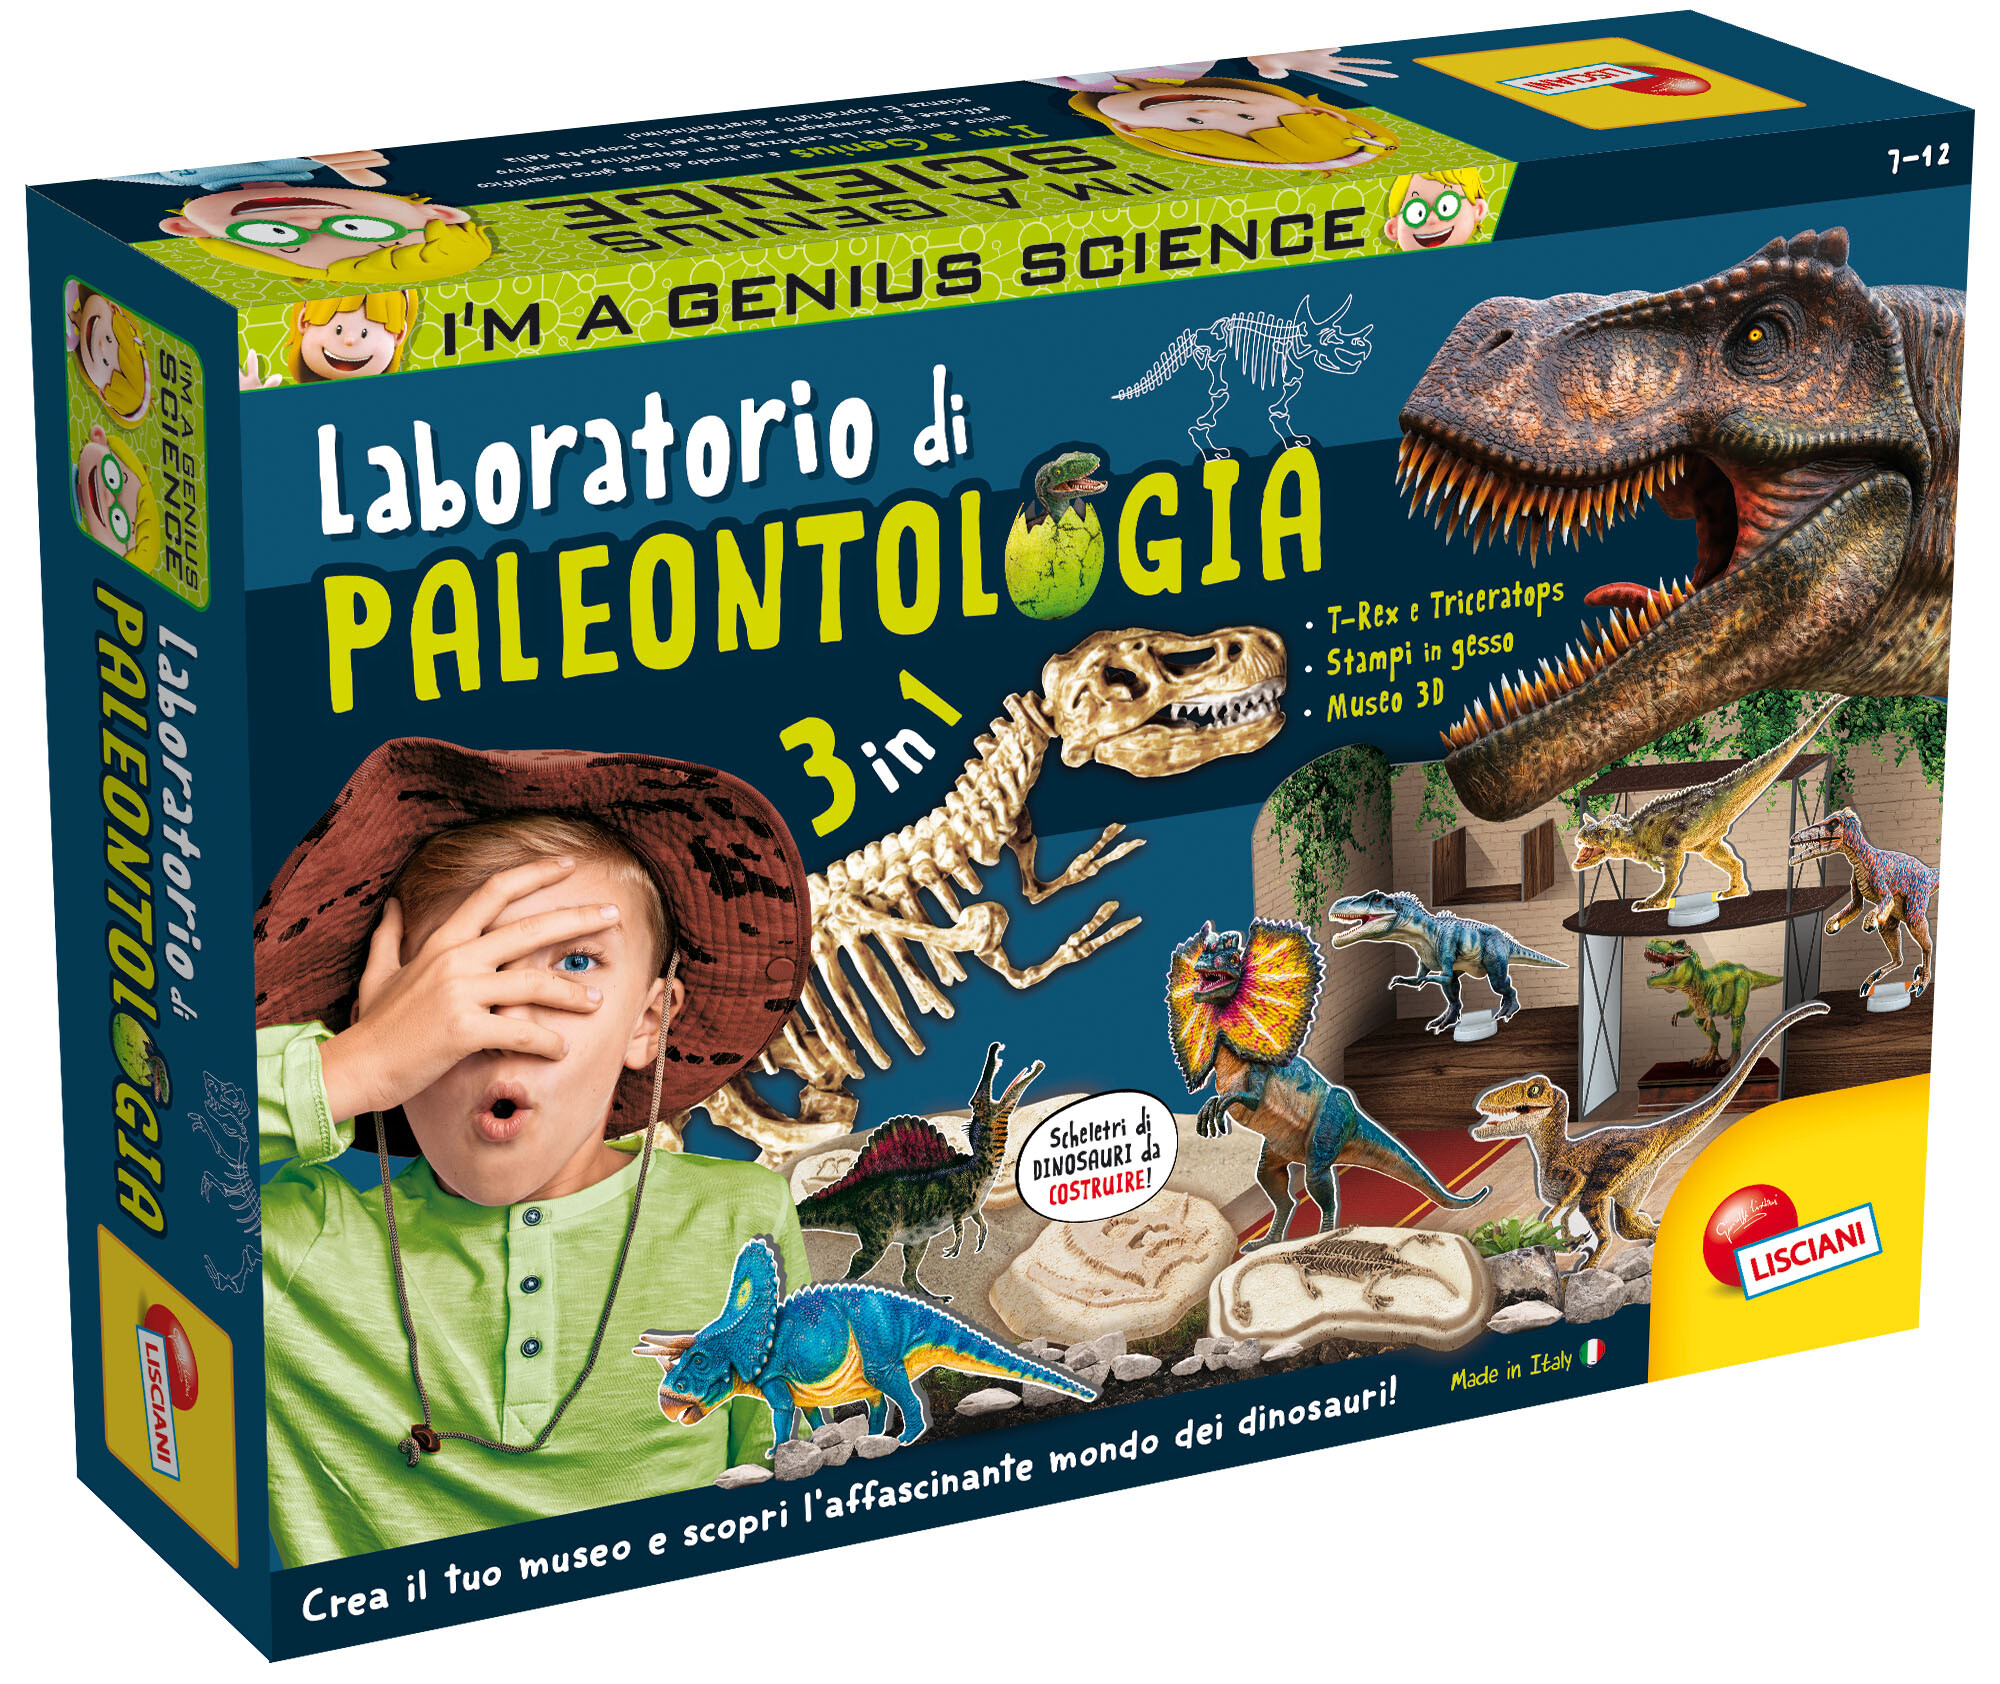 I'm a genius laboratorio di paleontologia - LISCIANI